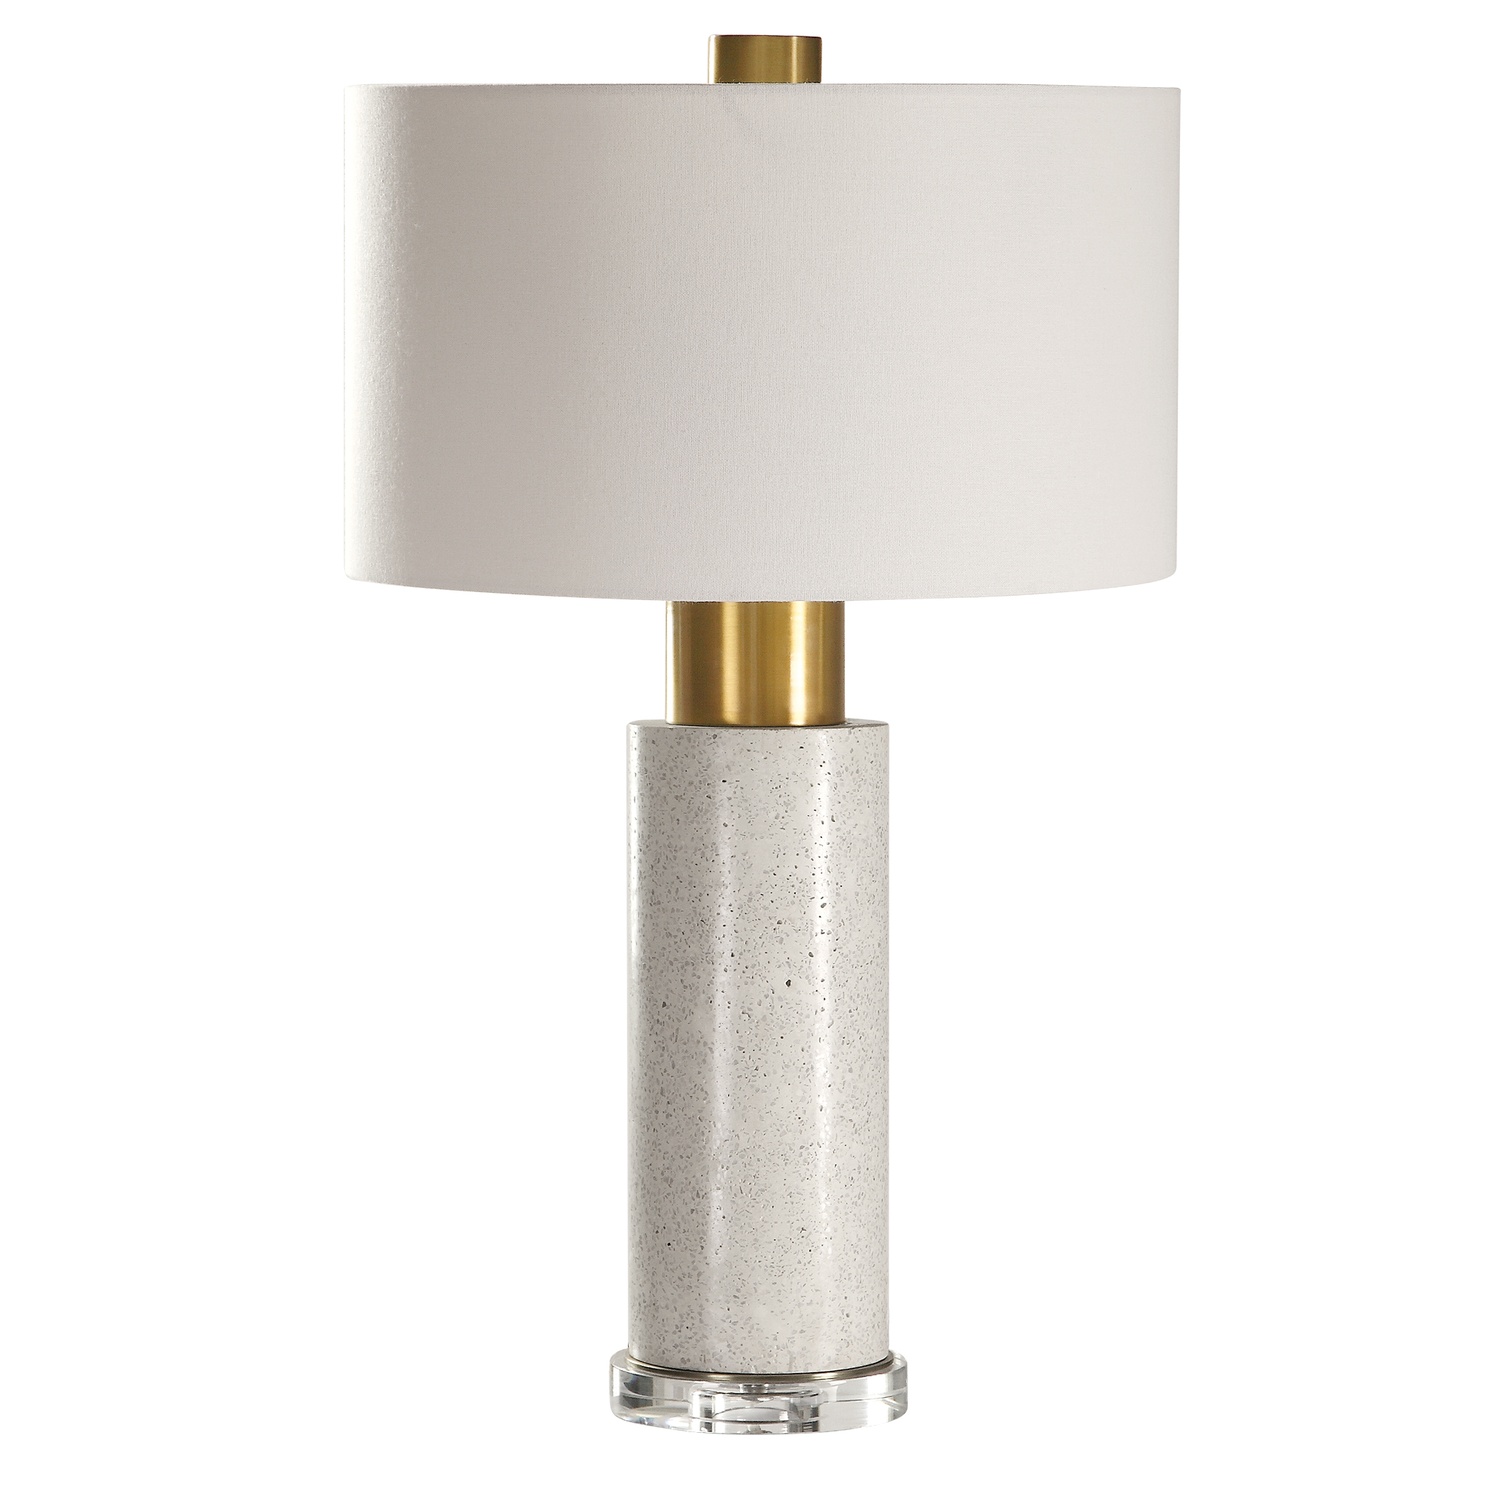 Vaeshon-Concrete Table Lamp